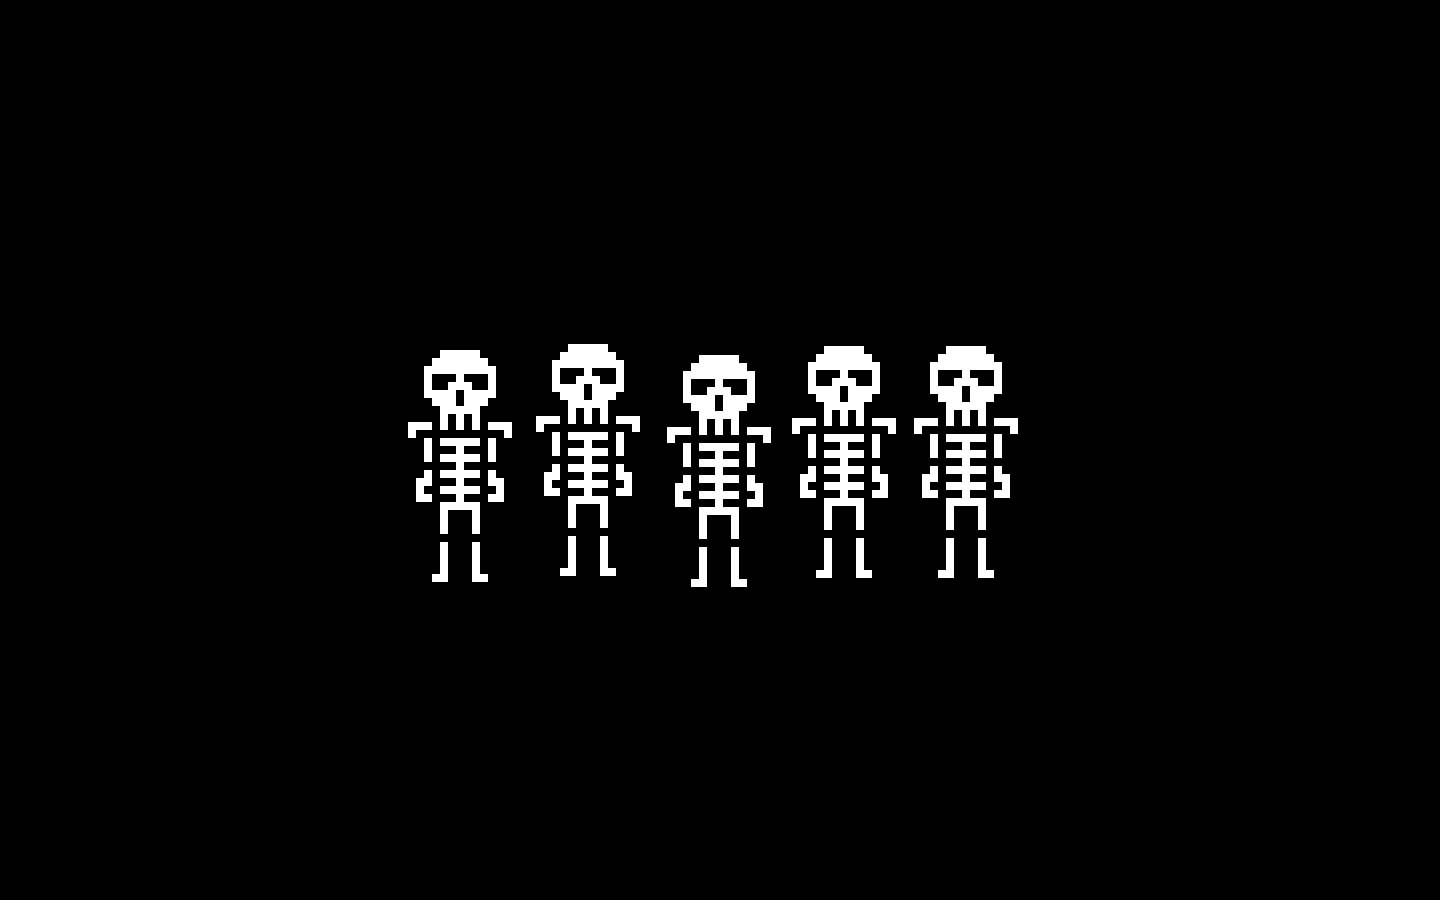 Pixel Art Skeleton Wallpaper